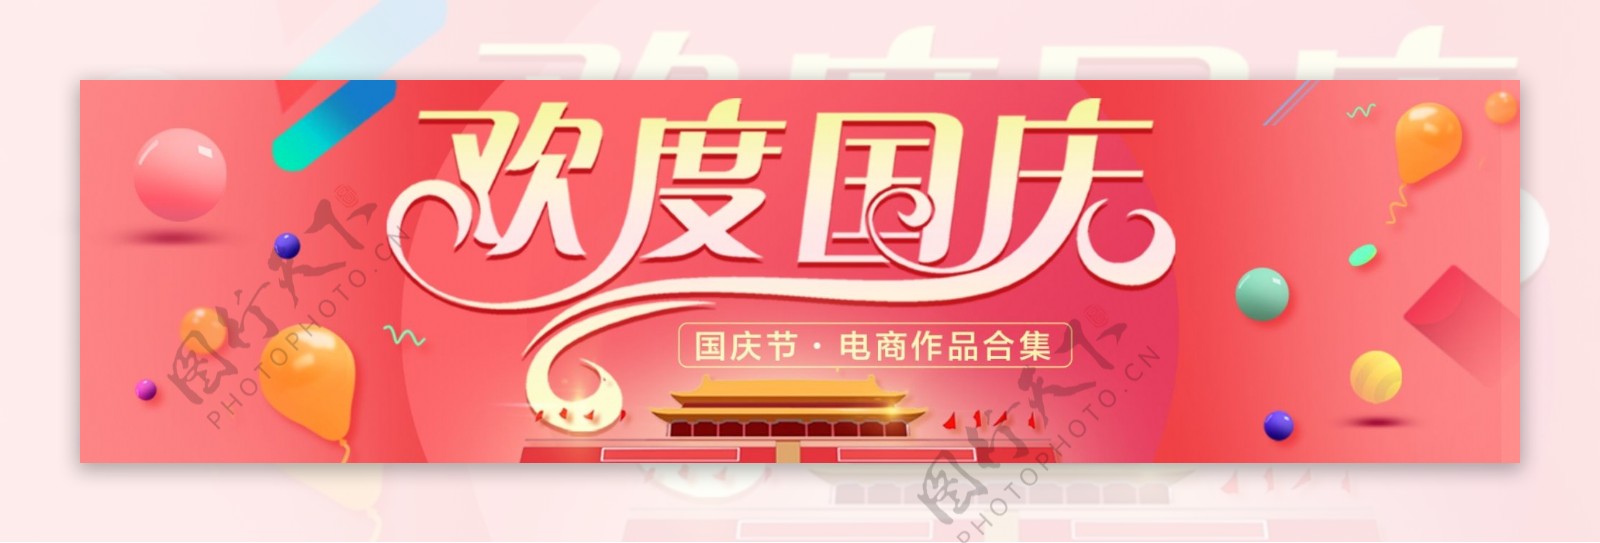 中秋国庆红色喜庆banner商业海报设计